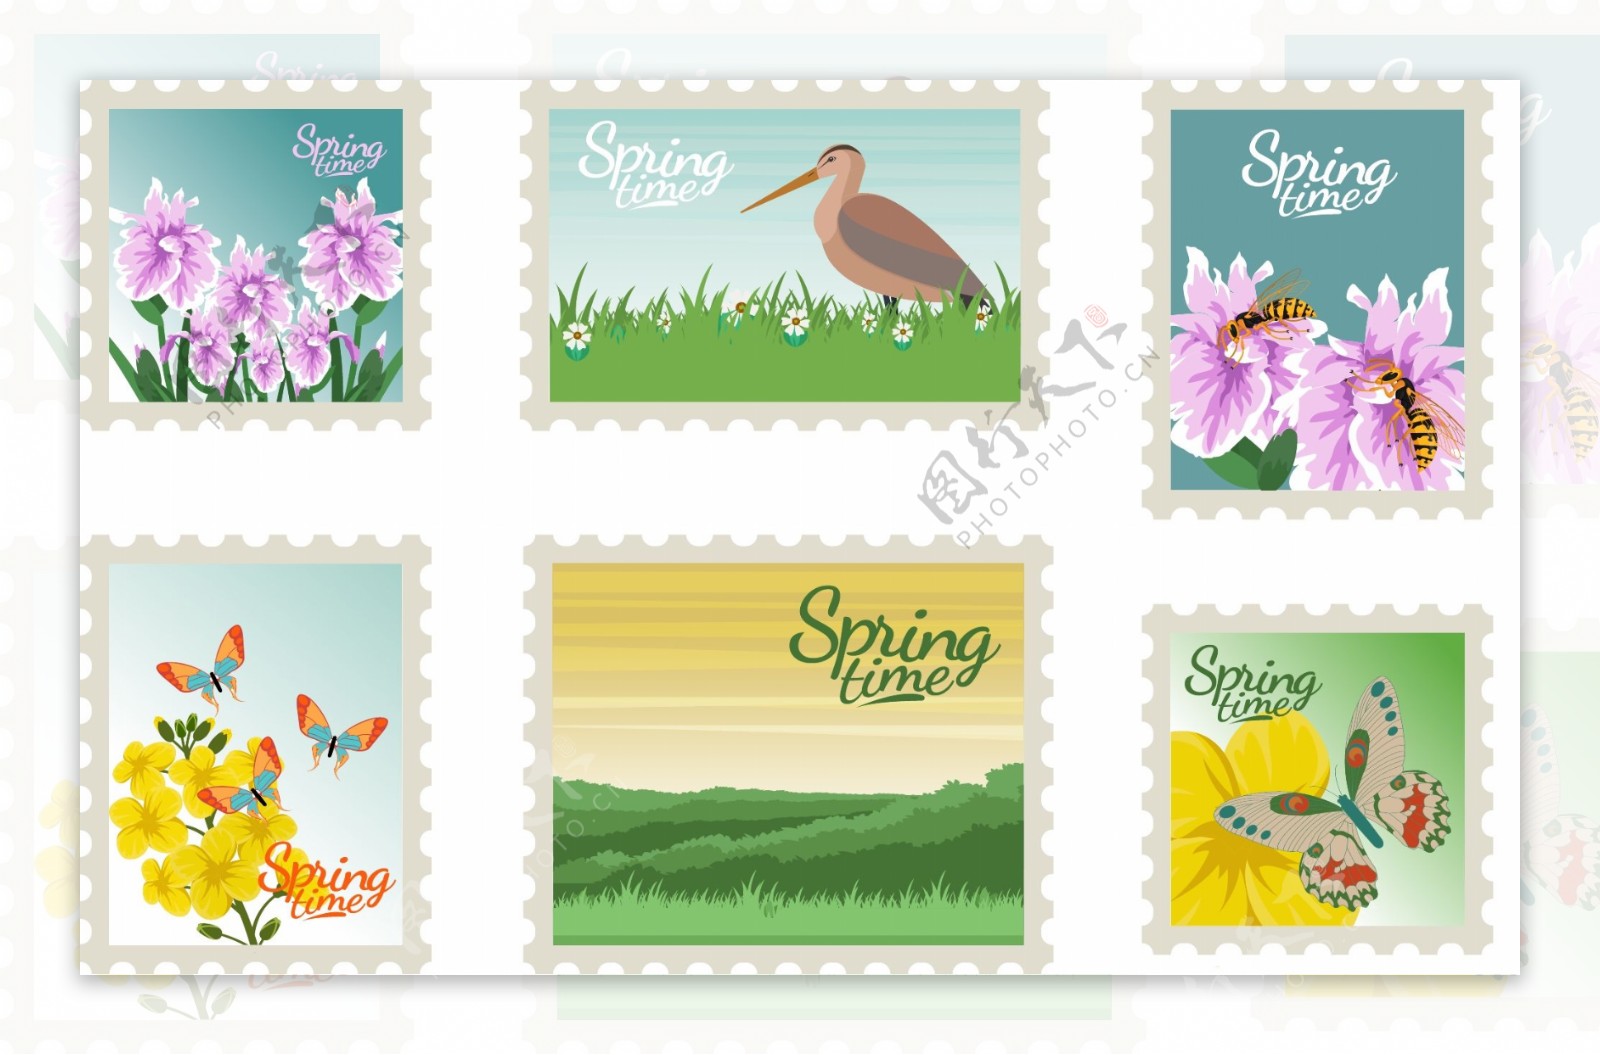 创意春天元素邮票